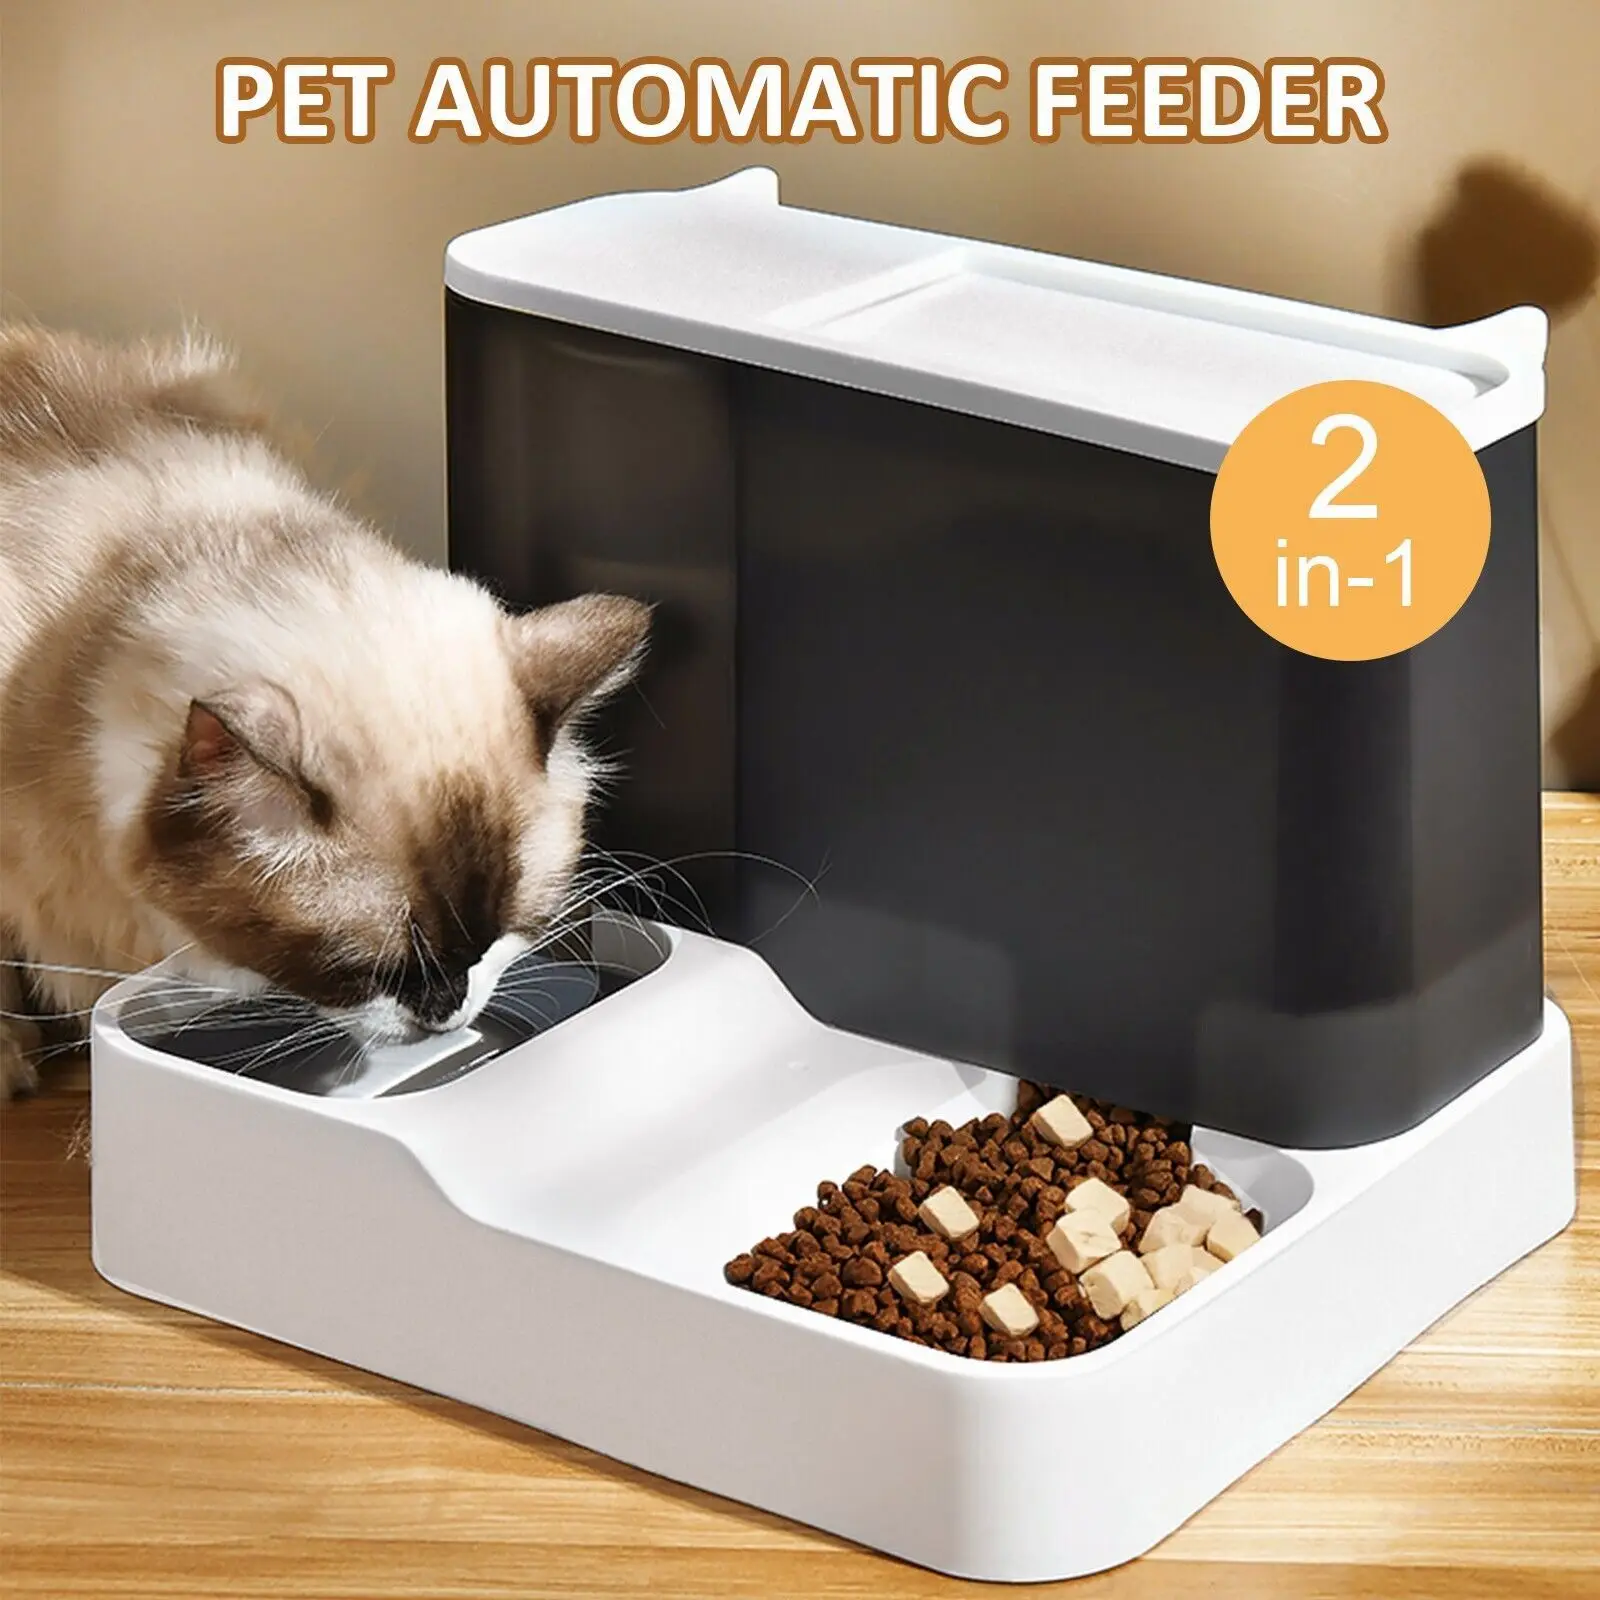 

Автоматическая бутылка для кормления домашних животных, большой дозатор для 2 еды, миска для собак, товары для самостоятельного разделения, влажная кормушка для кошек, сухой емкости, воды в 1